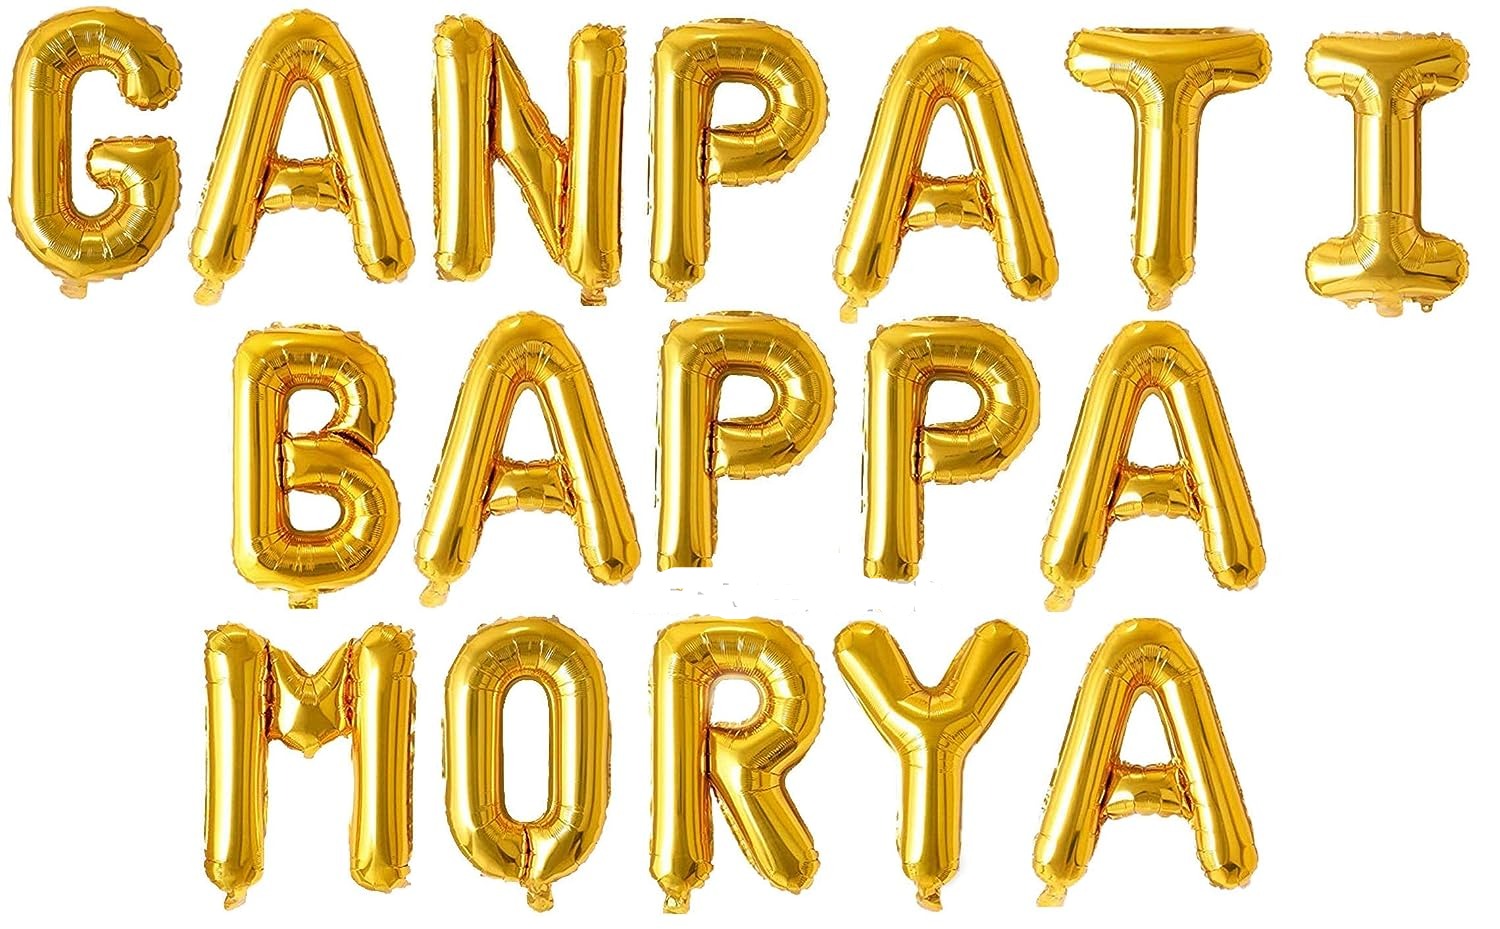 Eva party shop Golden 'GANPATI BAPPA MORYA' Foil Paper Banner - Celebrate Ganpati Festival in Style